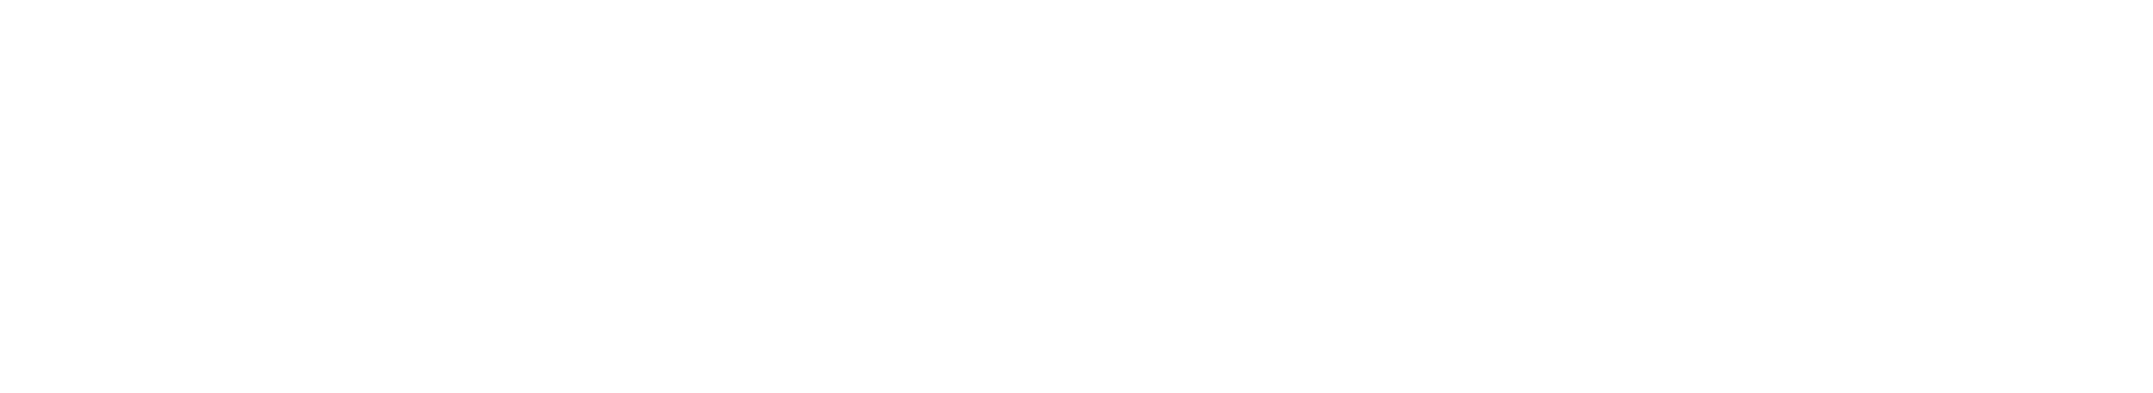 American Society for Biochemistry and Molecular Biology - UC Santa Barbara